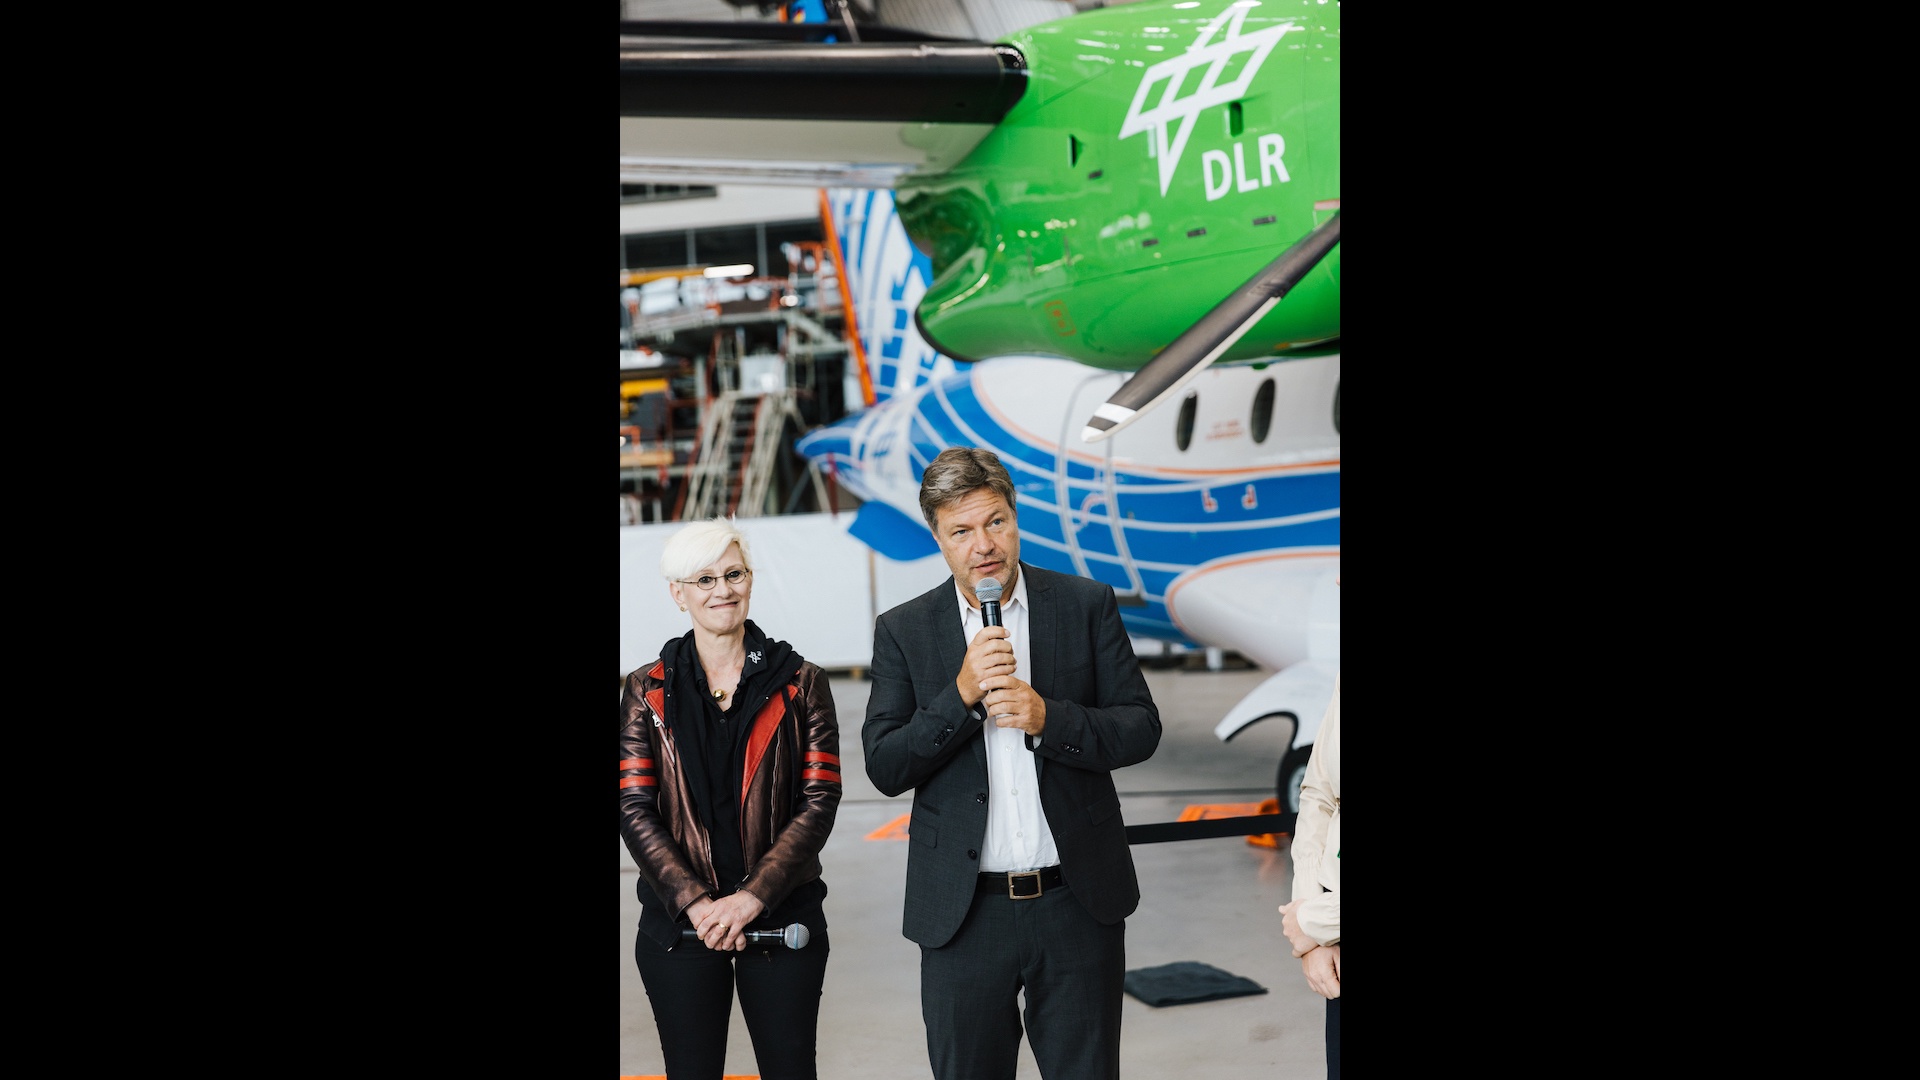 Bundminister Habeck spricht über den Luftfahrtstandort Deutschland